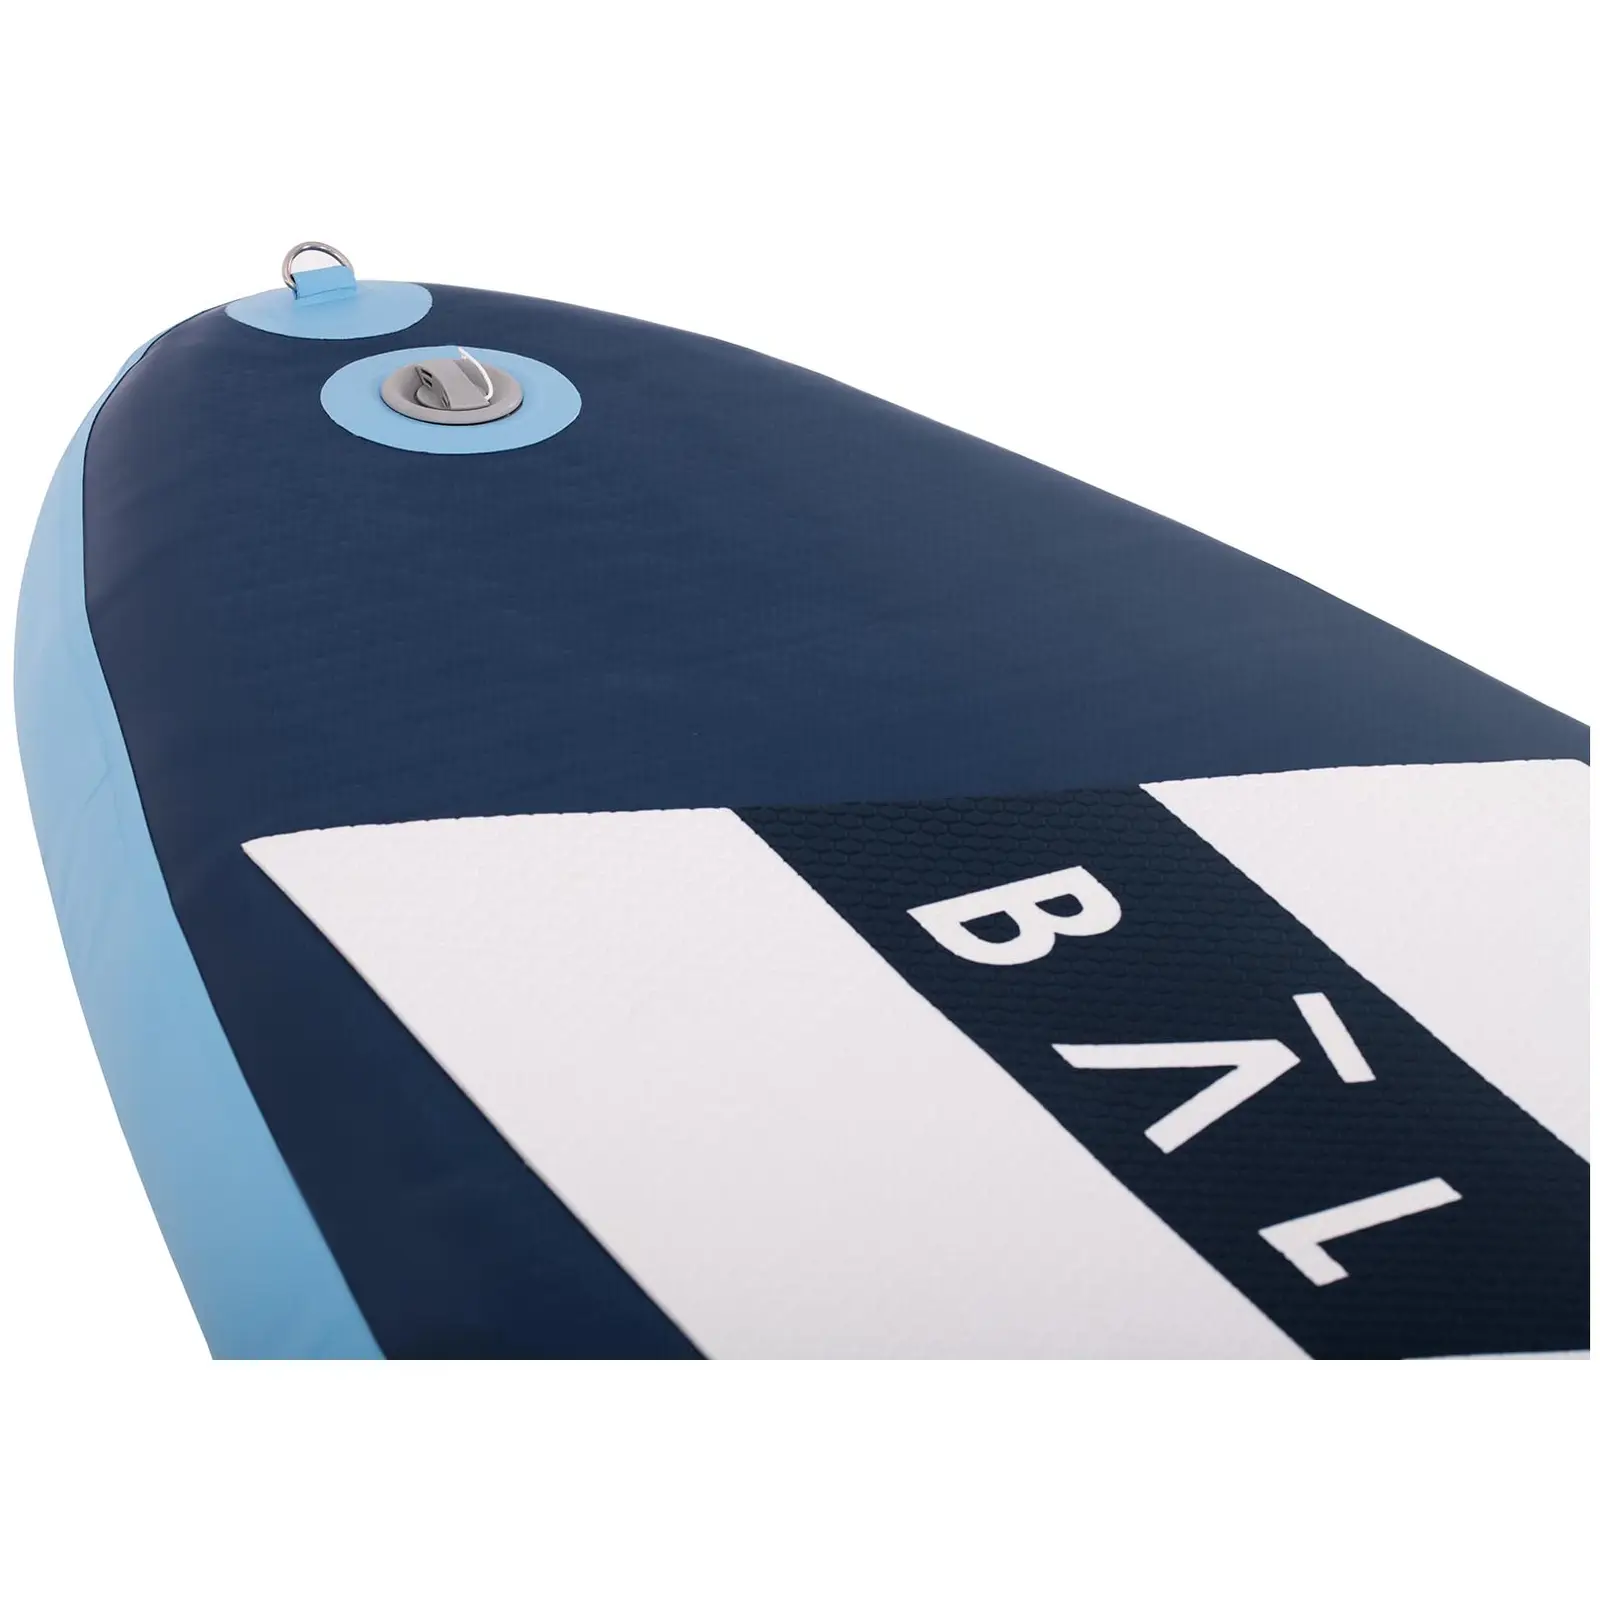 Stand up paddle gonflable - 135 kg - Bleu pâle/bleu marin - Kit incluant pagaie et accessoires